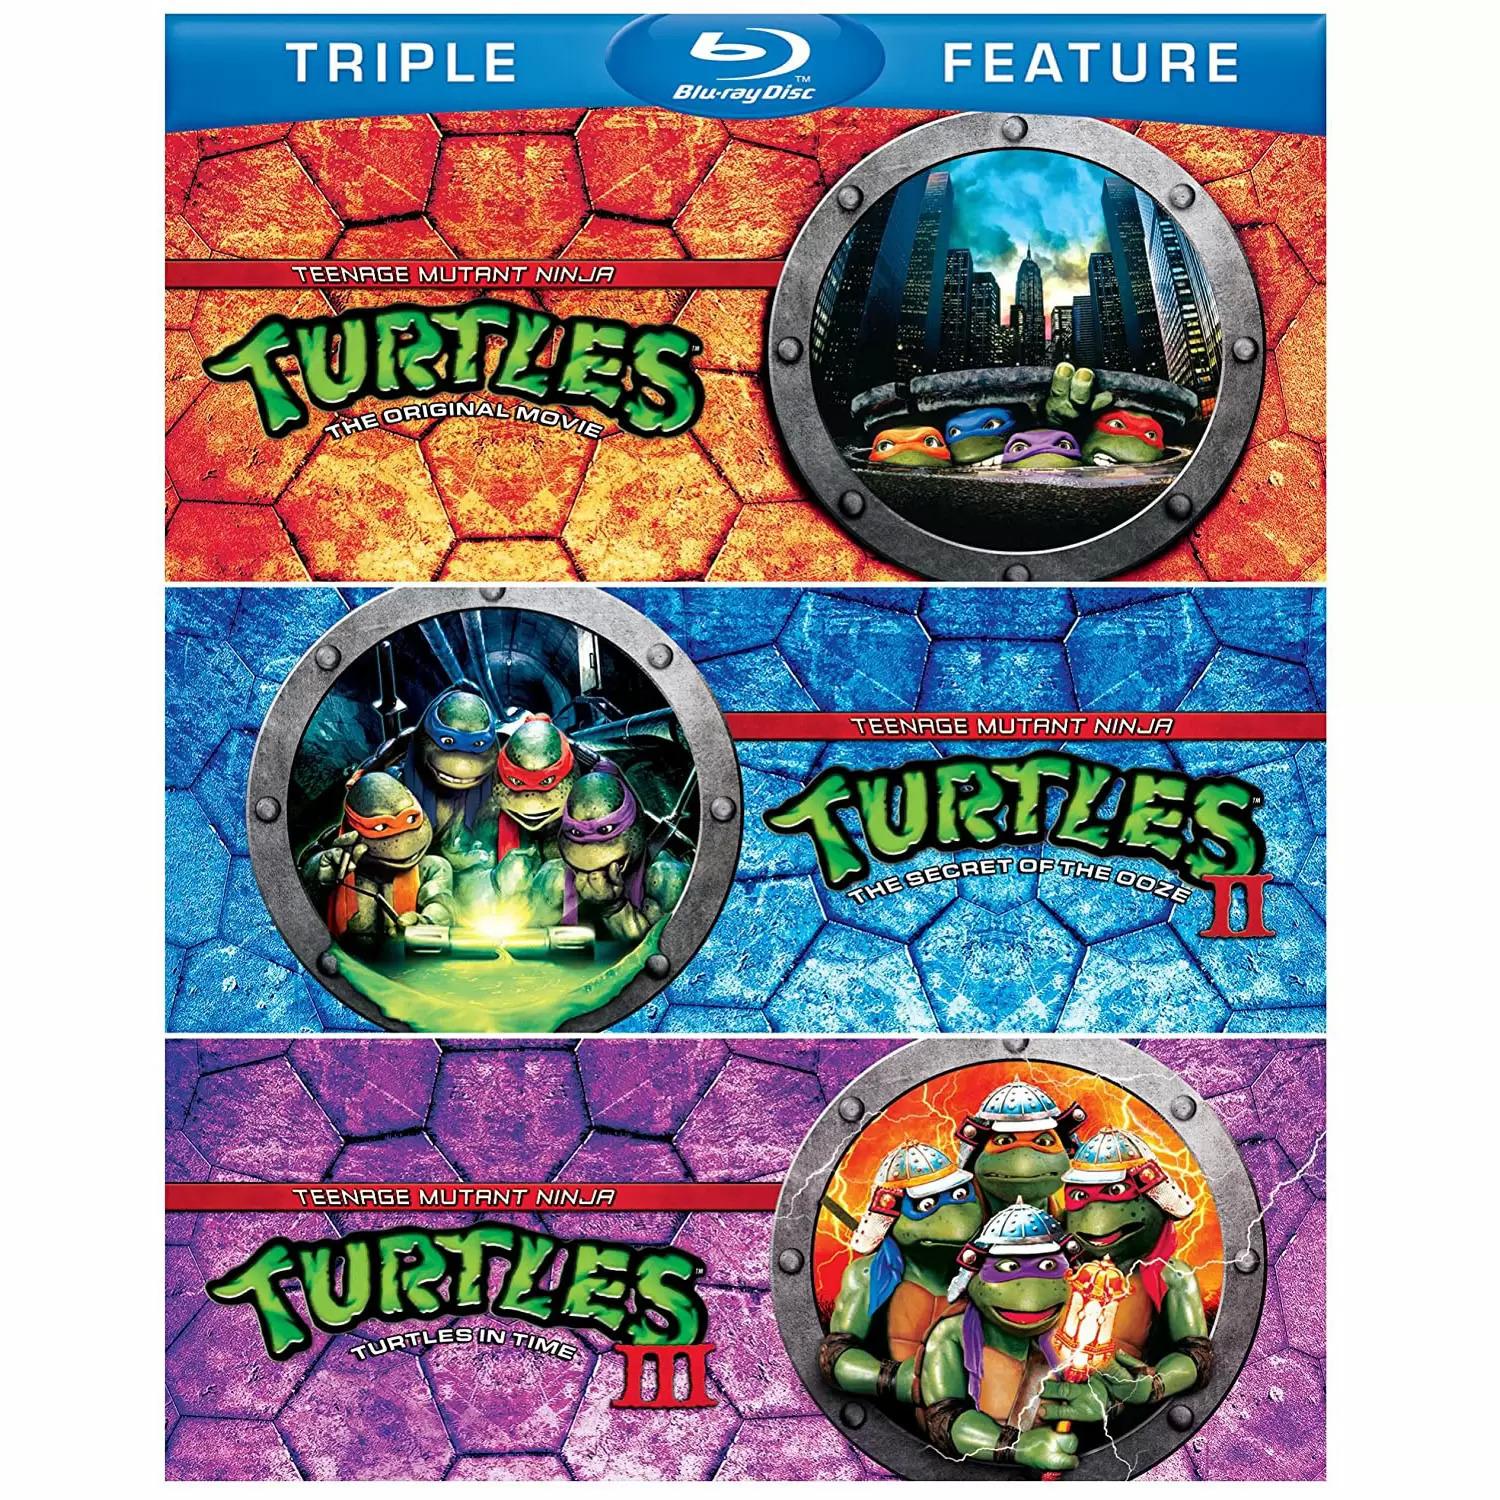 Teenage Mutant Ninja Turtles Triple Feature Blu-ray for $10.99